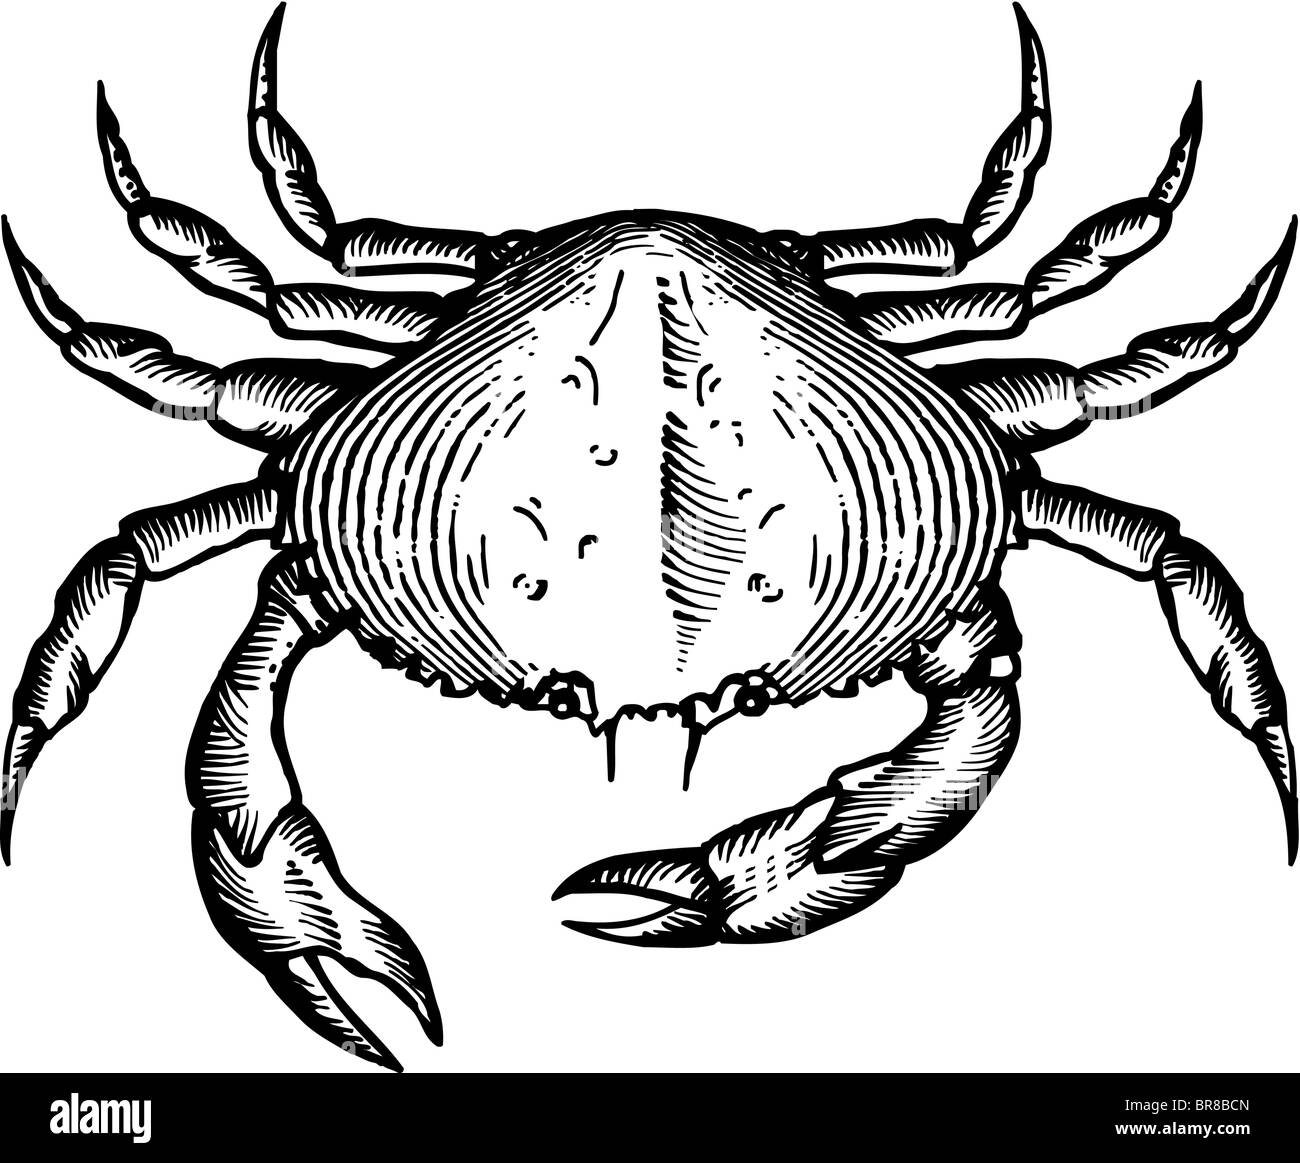 Un dessin en noir et blanc d'un crabe dungeoness Banque D'Images